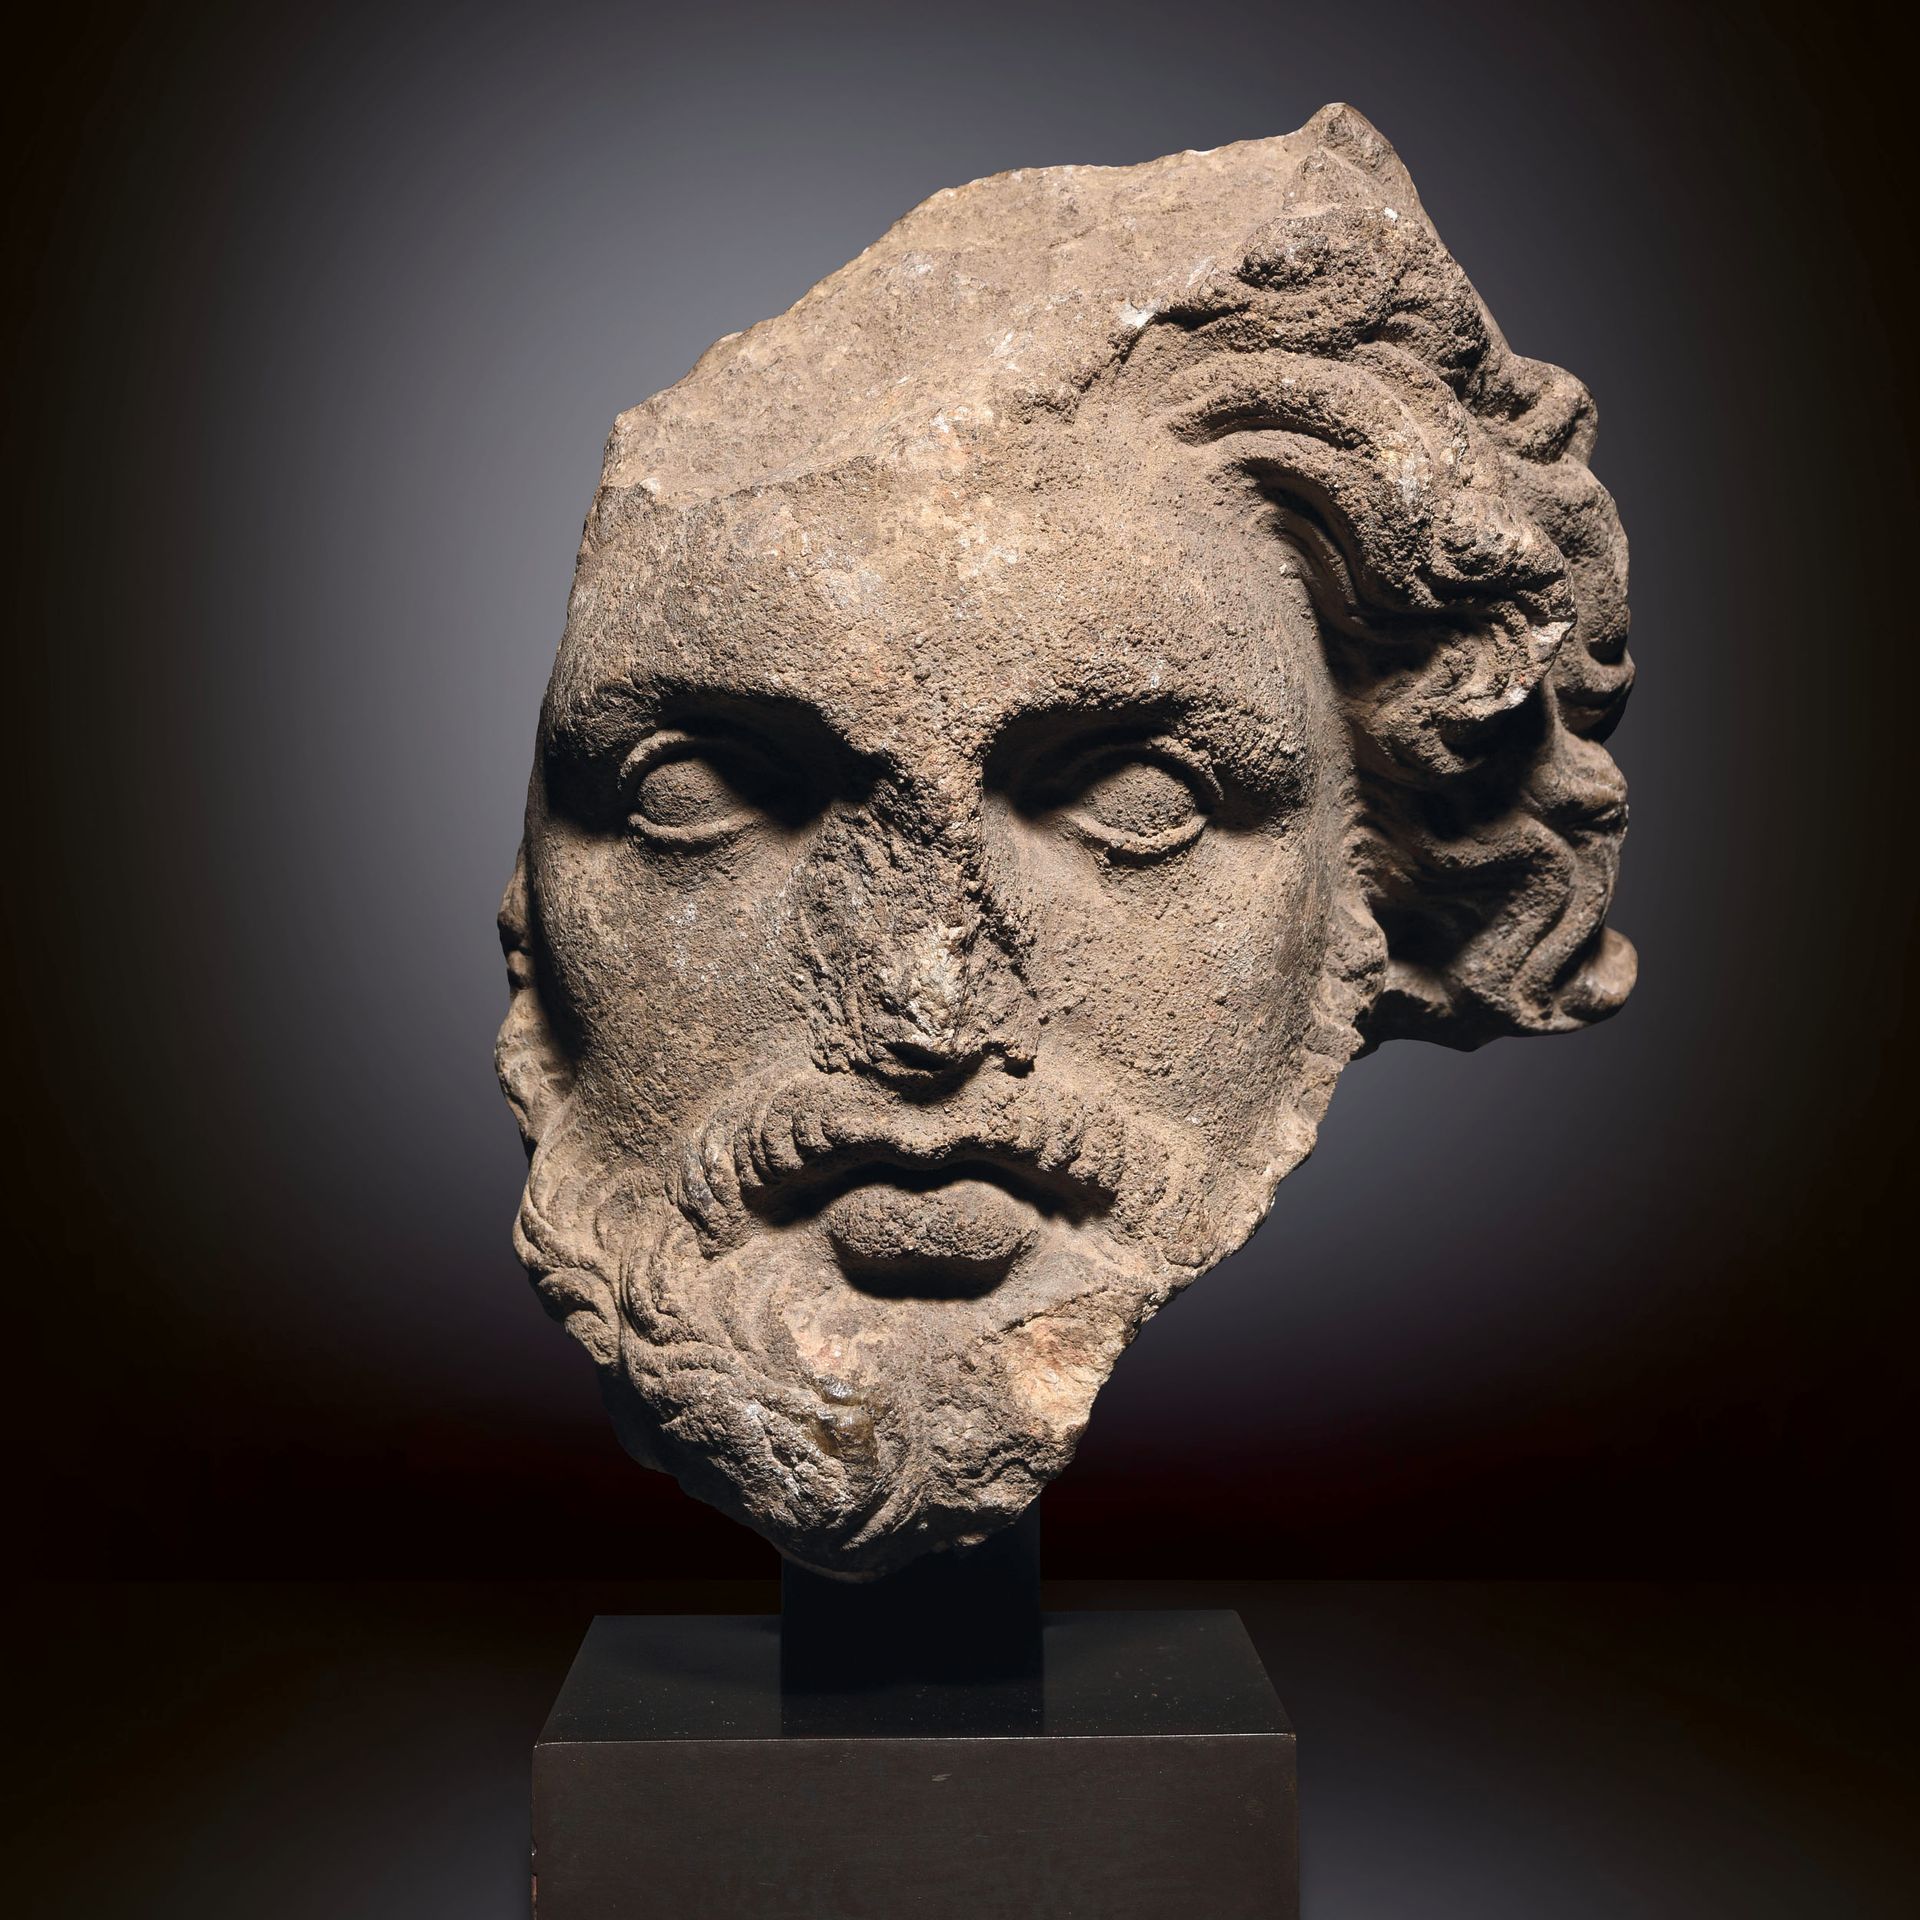 Null 残缺的大胡子头像

希腊，公元前1-3世纪

大理石的整个表面有明显的凝结物

H.22厘米



出处

W.S.博士的前收藏，德国，1970年

&hellip;